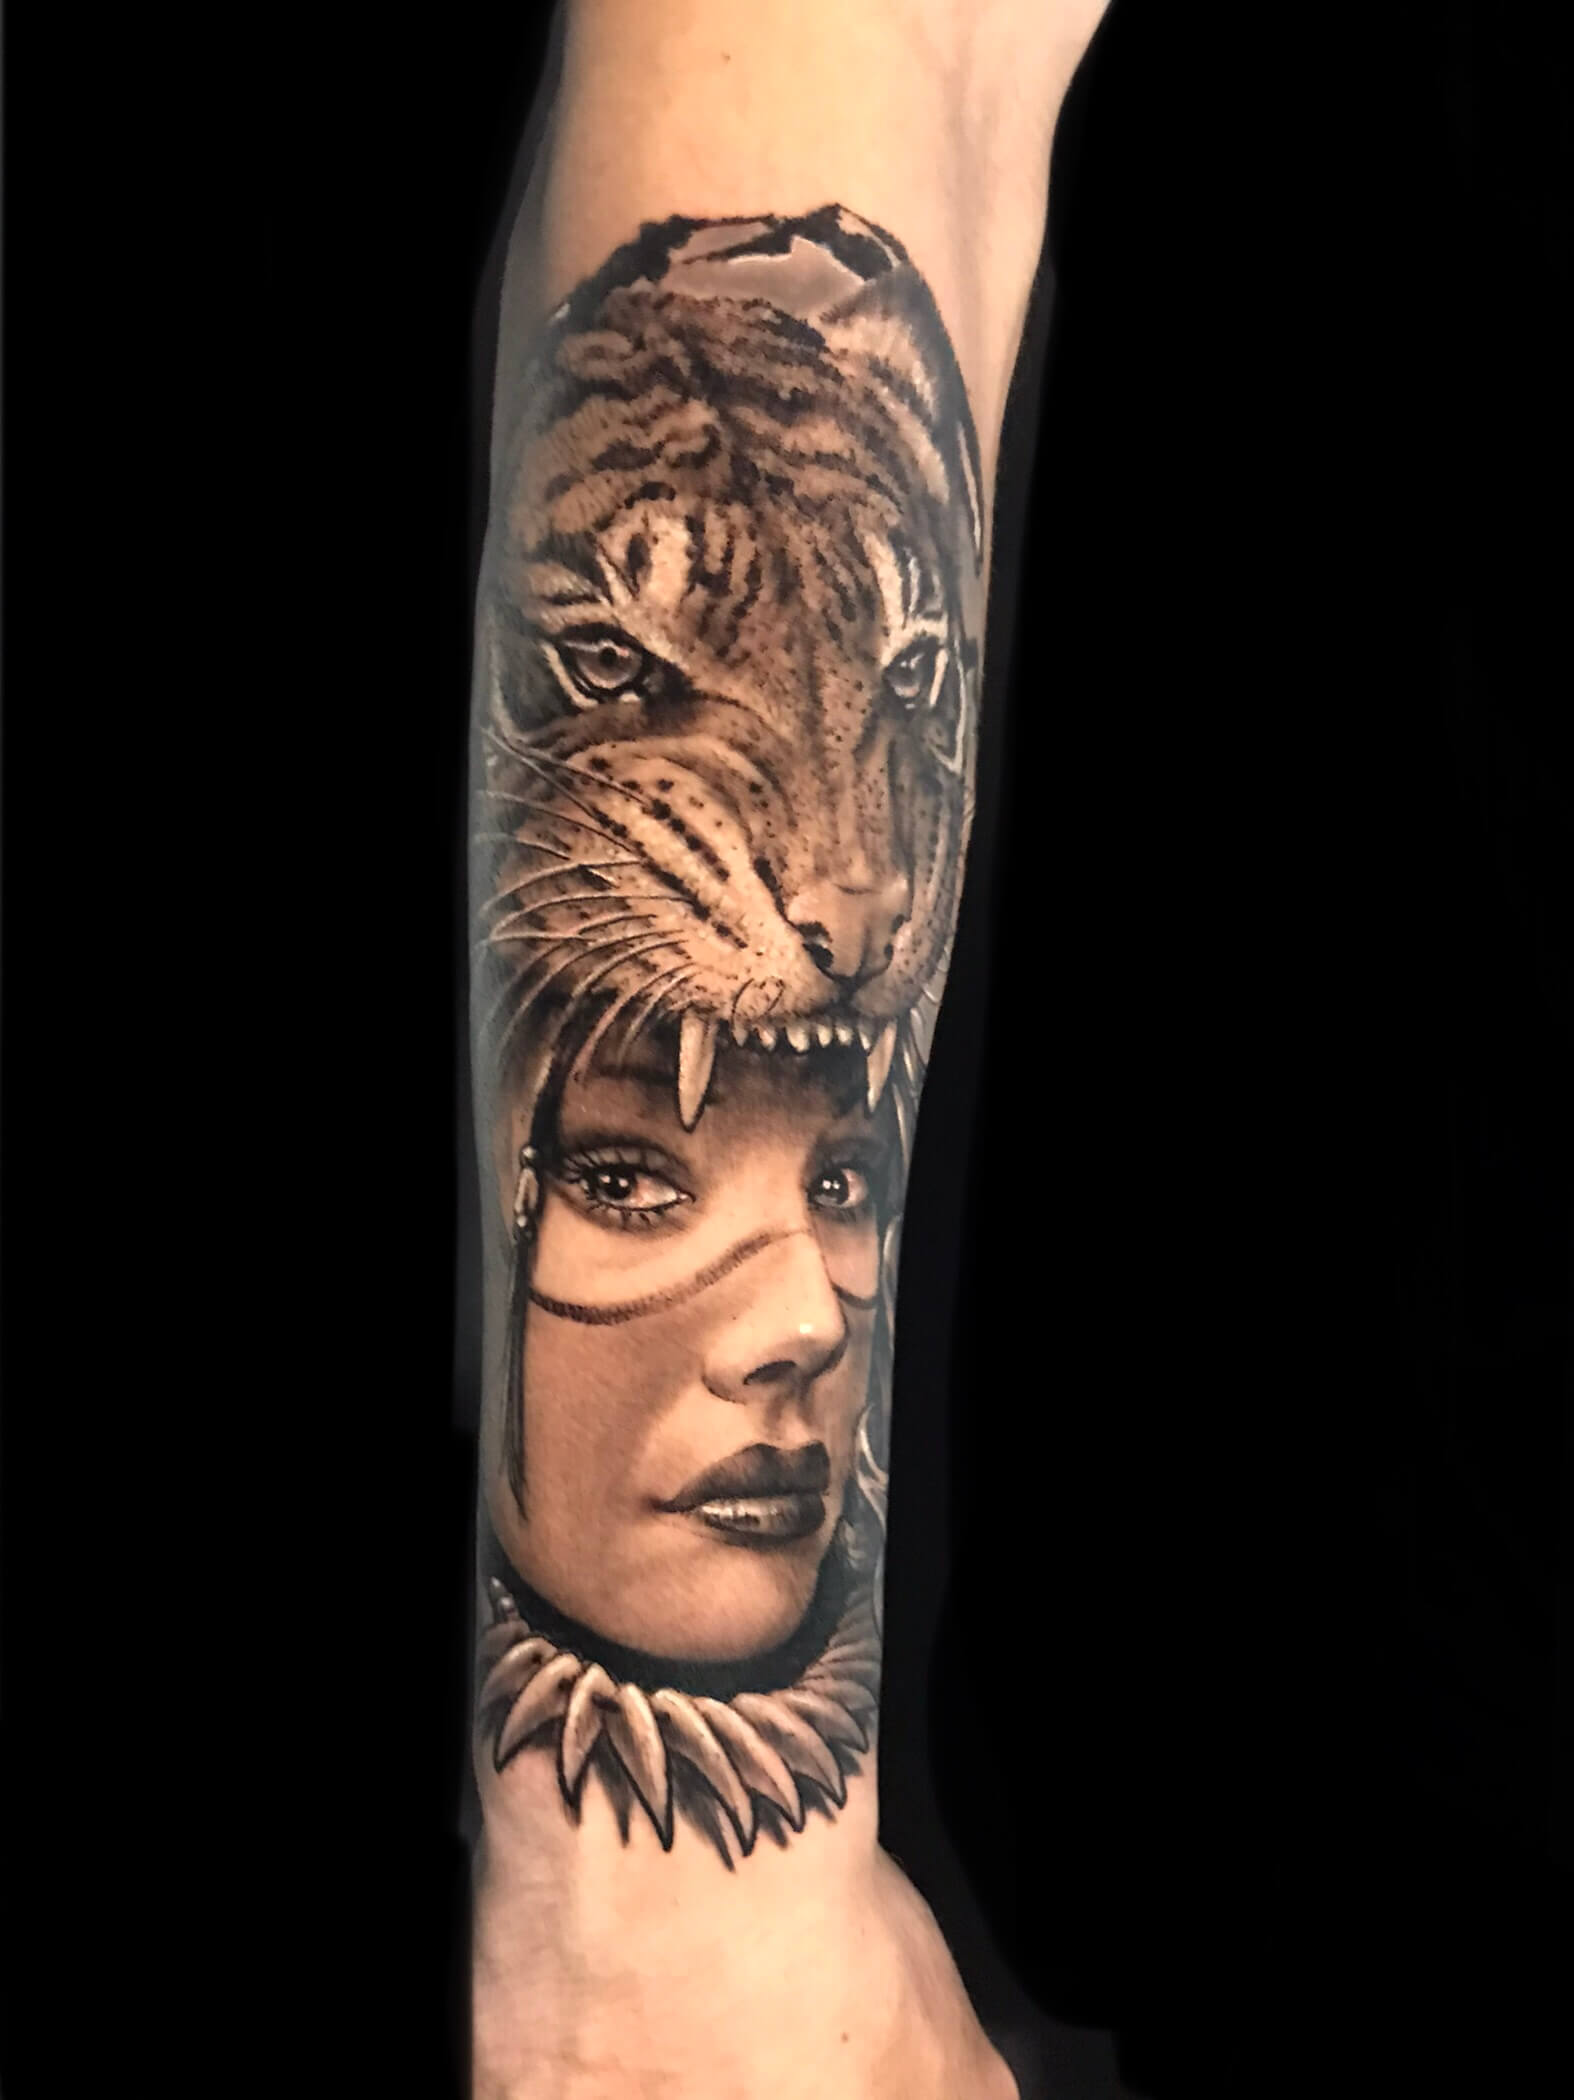 Tatuaje de una mujer tigre en el antebrazo